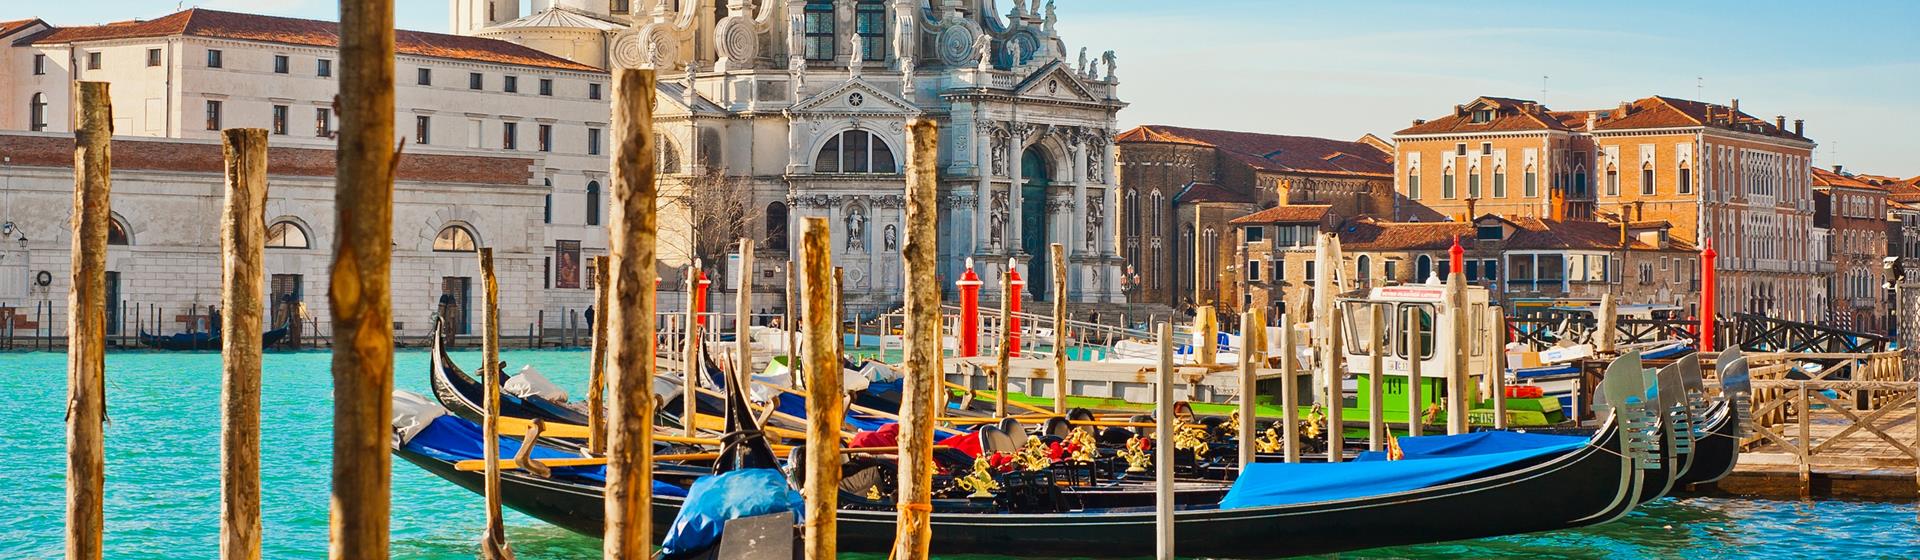 Holidays & City Breaks to Venice